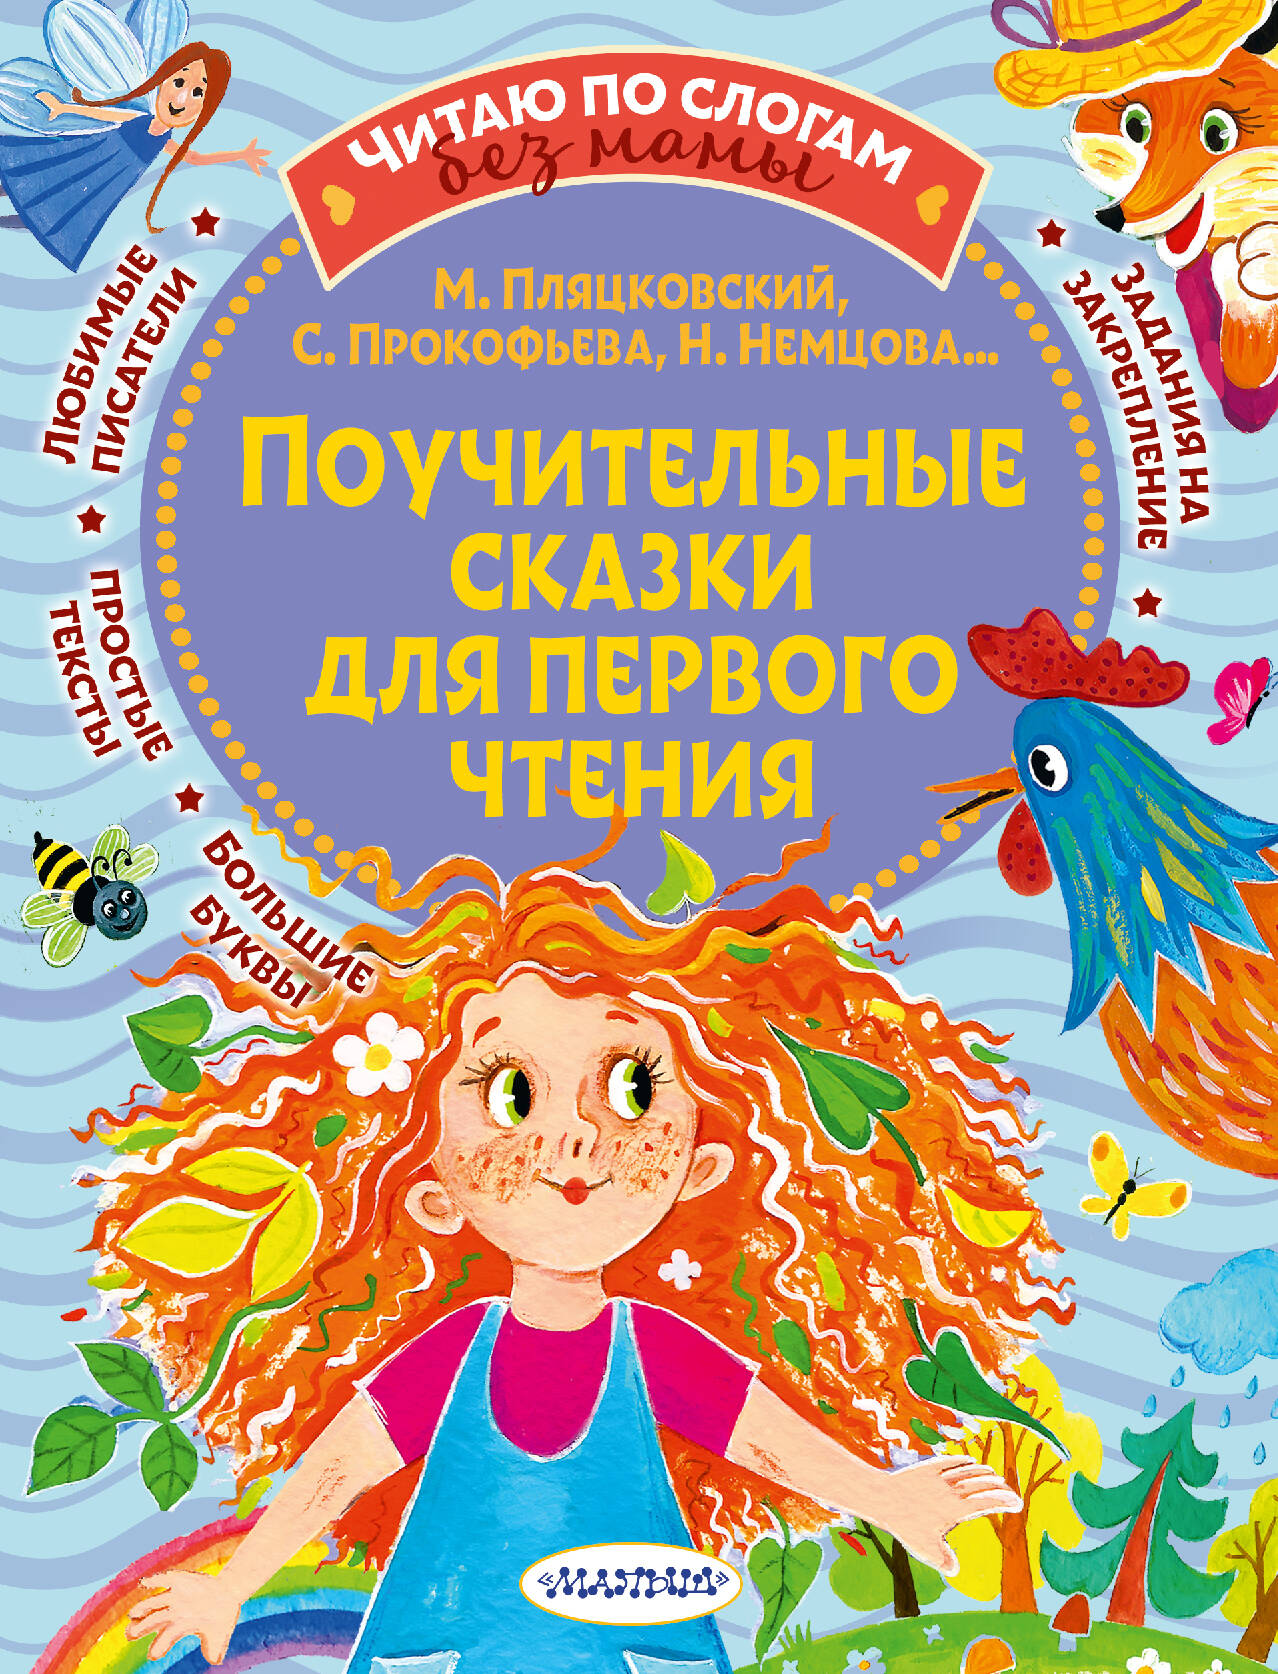 Прокофьева Софья Леонидовна Поучительные сказки для первого чтения волшебные сказки малышам